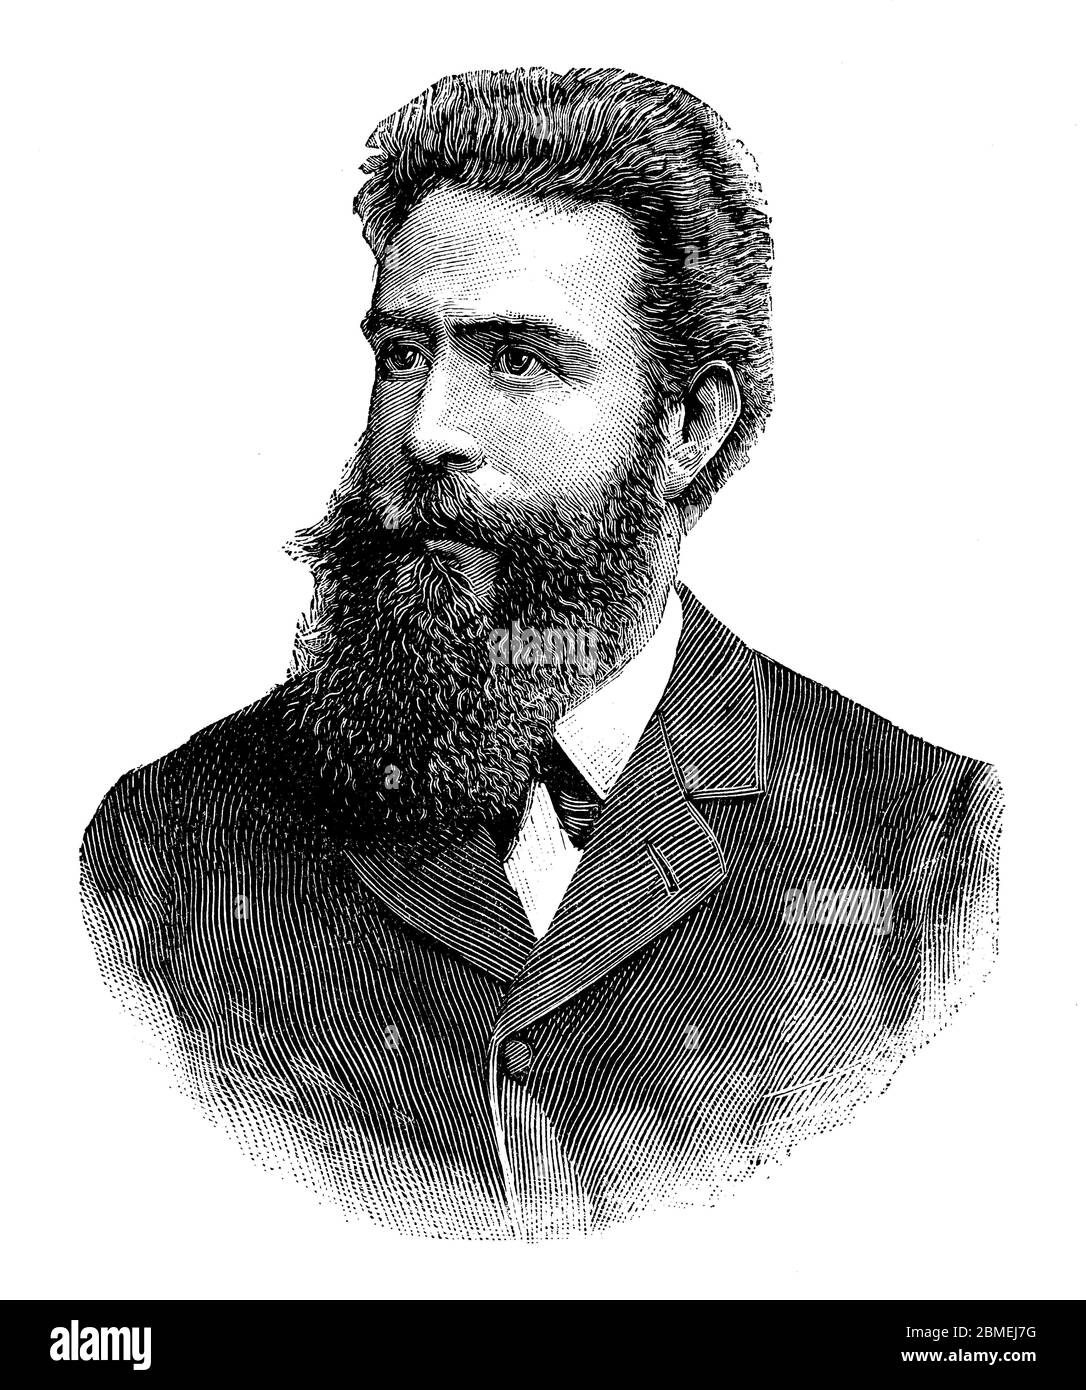 Wilhem Conrad Roetgen (1845-1943), físico y médico alemán, descubridor de los rayos X. Grabado de 1897. Stock Photo